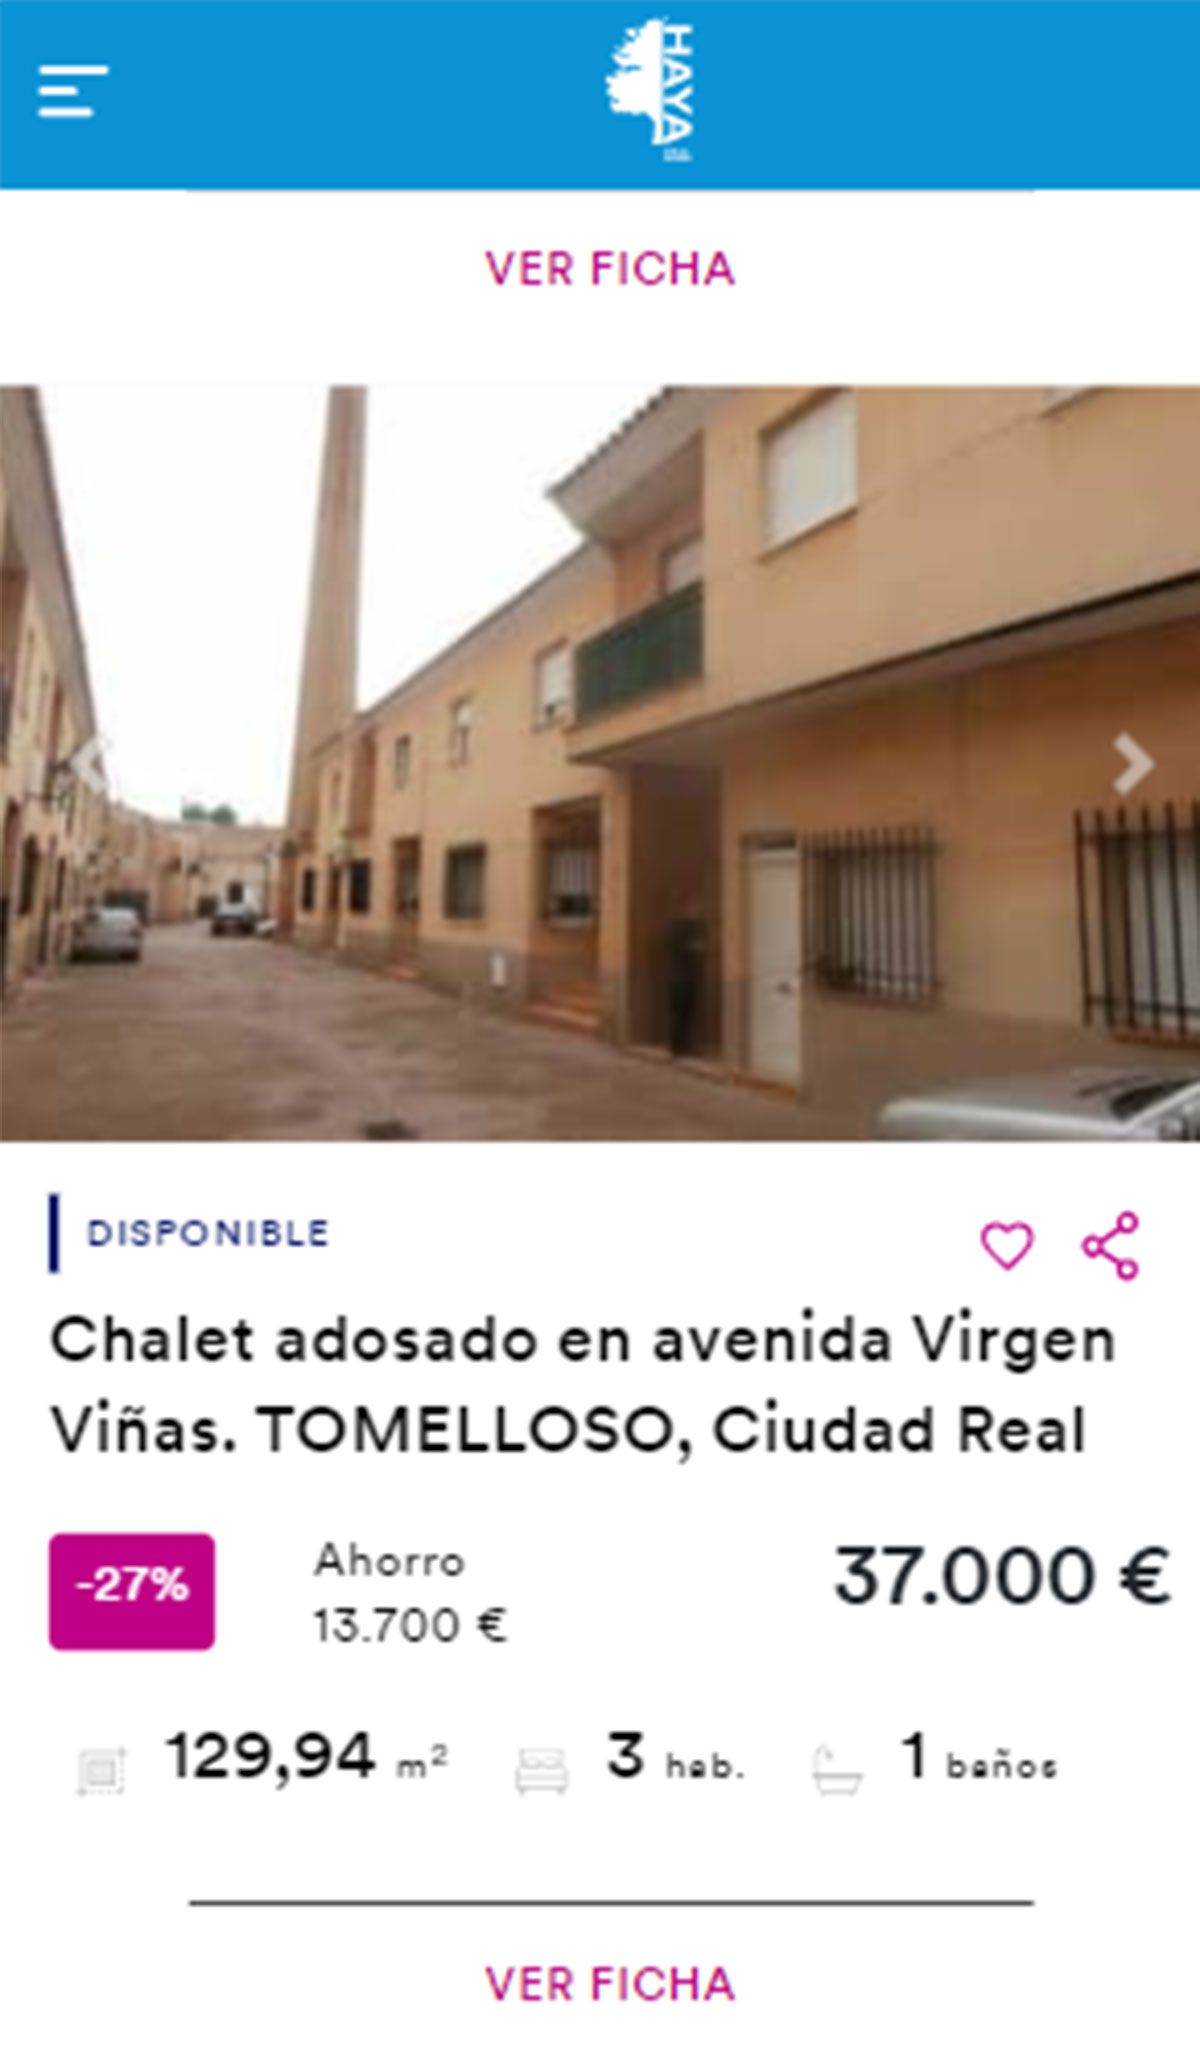 Chalet adosado en venta por 37.000 euros